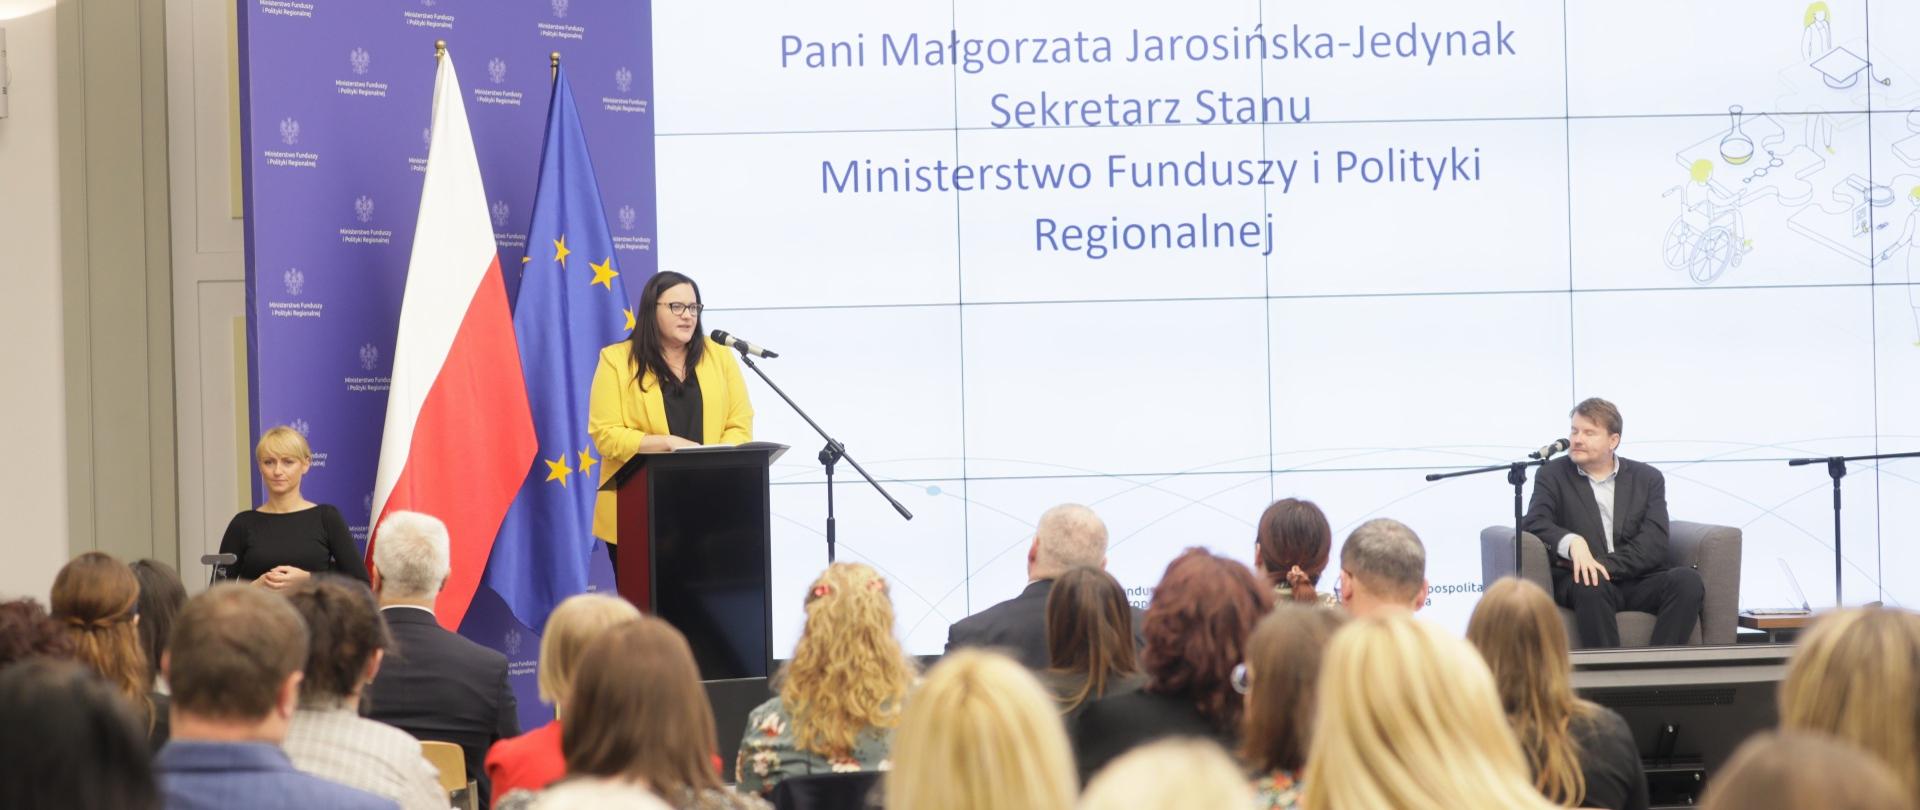 Wiceminister Małgorzata Jarosińska-Jedynak w mównicy z mikrofonem. Za nią flagi PL i UE i ekran. Przed publiczność siedząca na krzesłach.